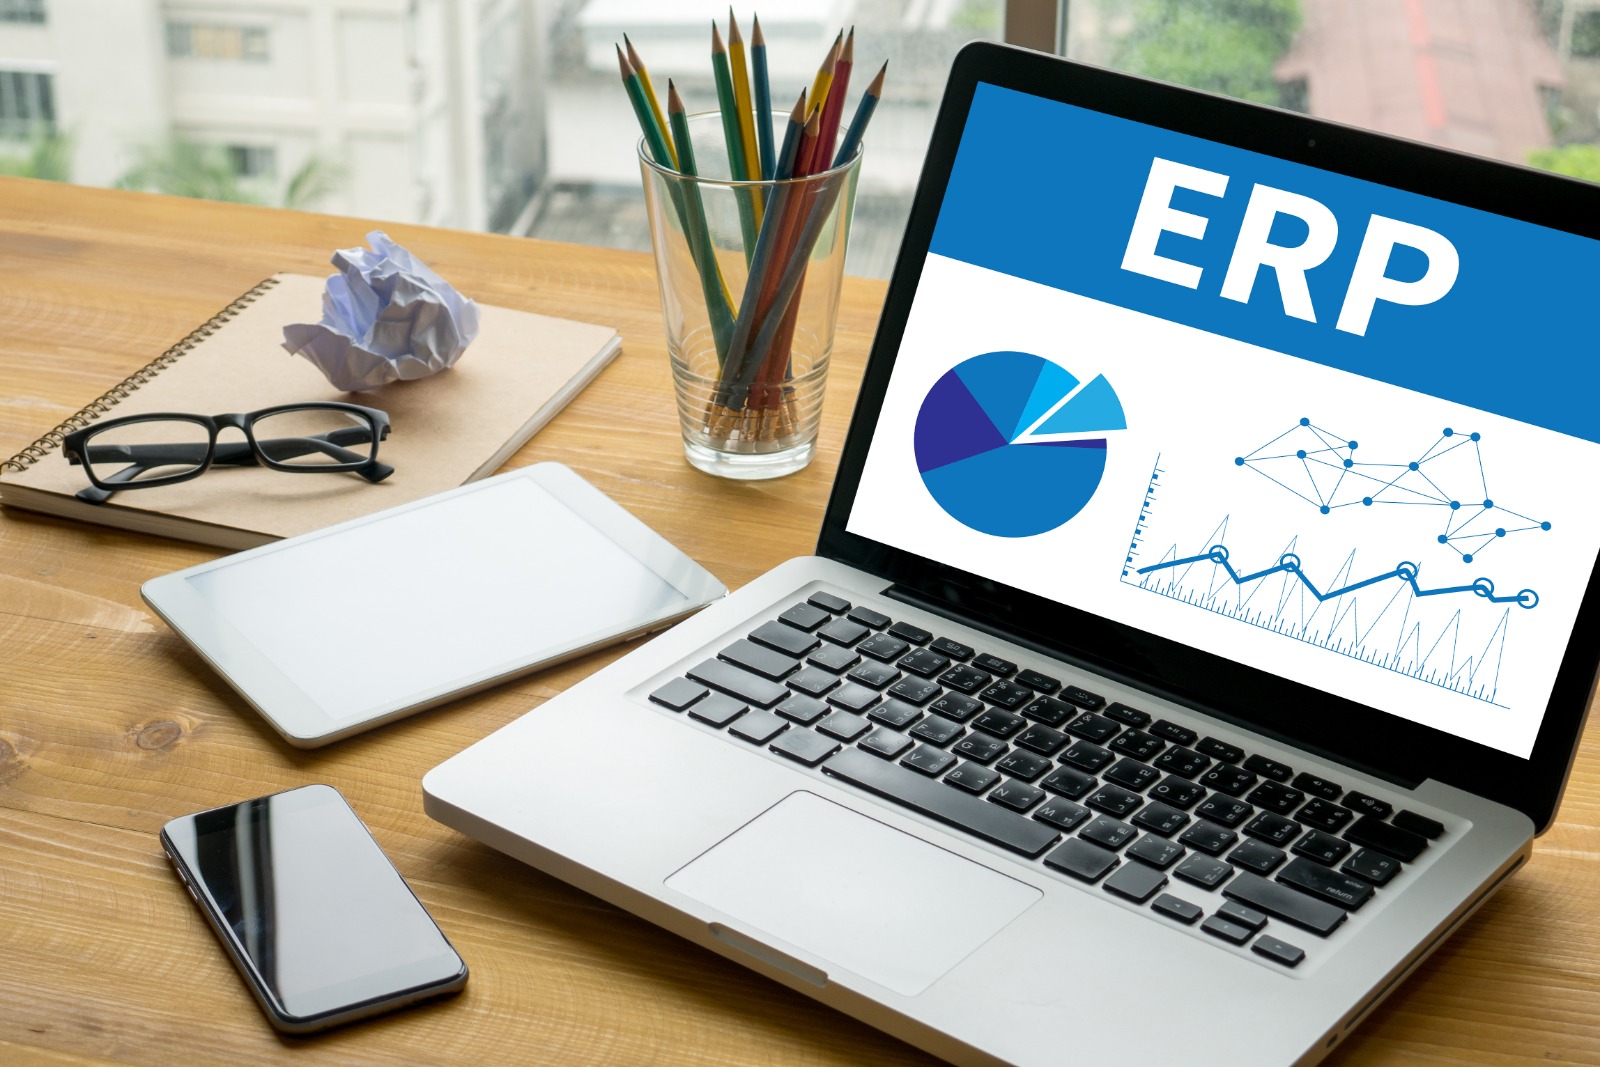 ¿Por qué mi empresa debería usar sistemas de gestión como un ERP?